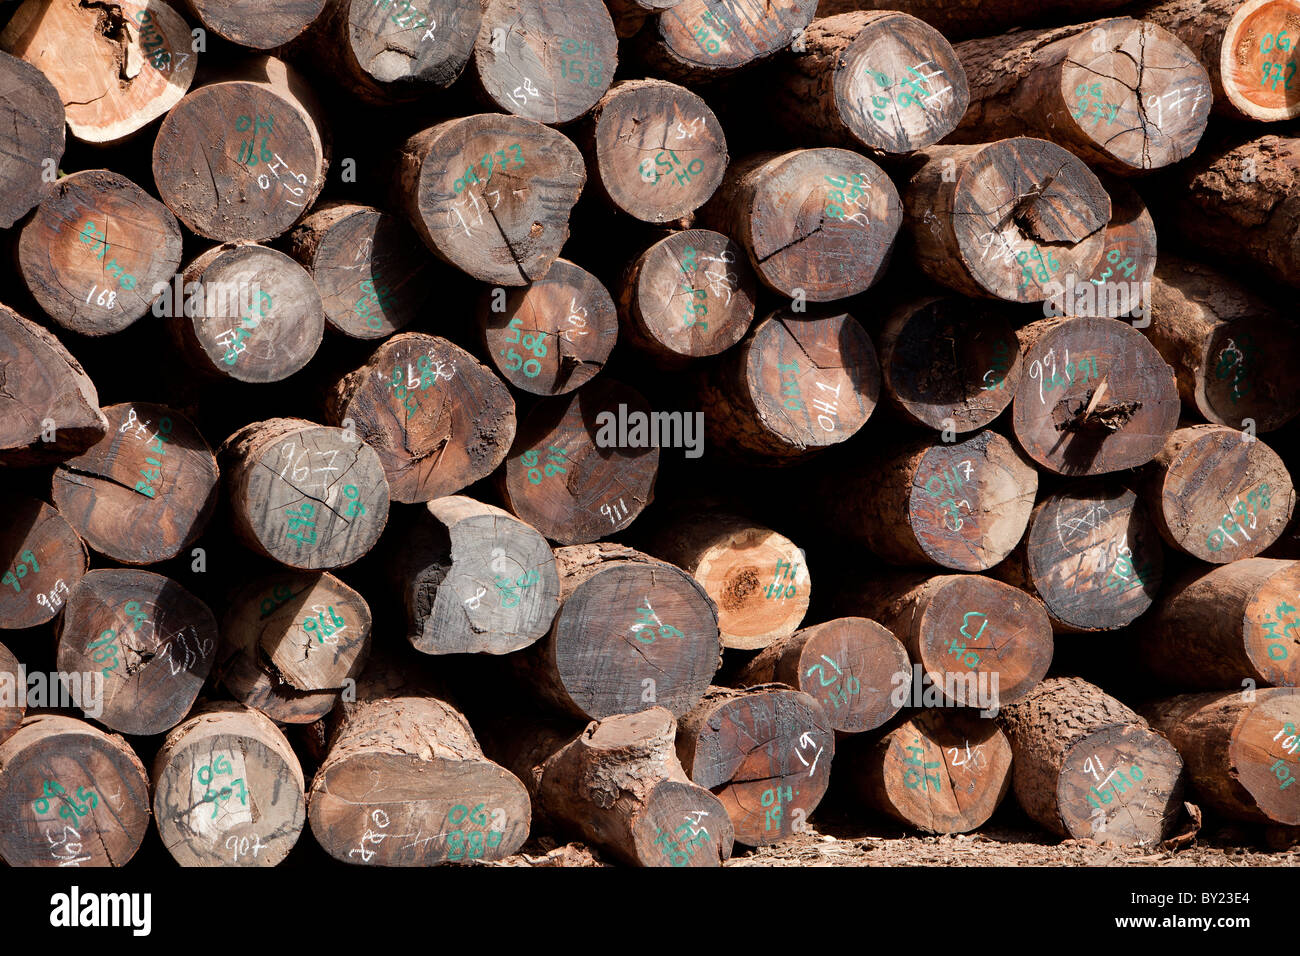 NAMPULA, MOZAMBIQUE, Mai 2010 : Le dépôt de bois de bois vert, une concession forestière appartenant à des Chinois qui sont sous licence pour l'exploitation Banque D'Images